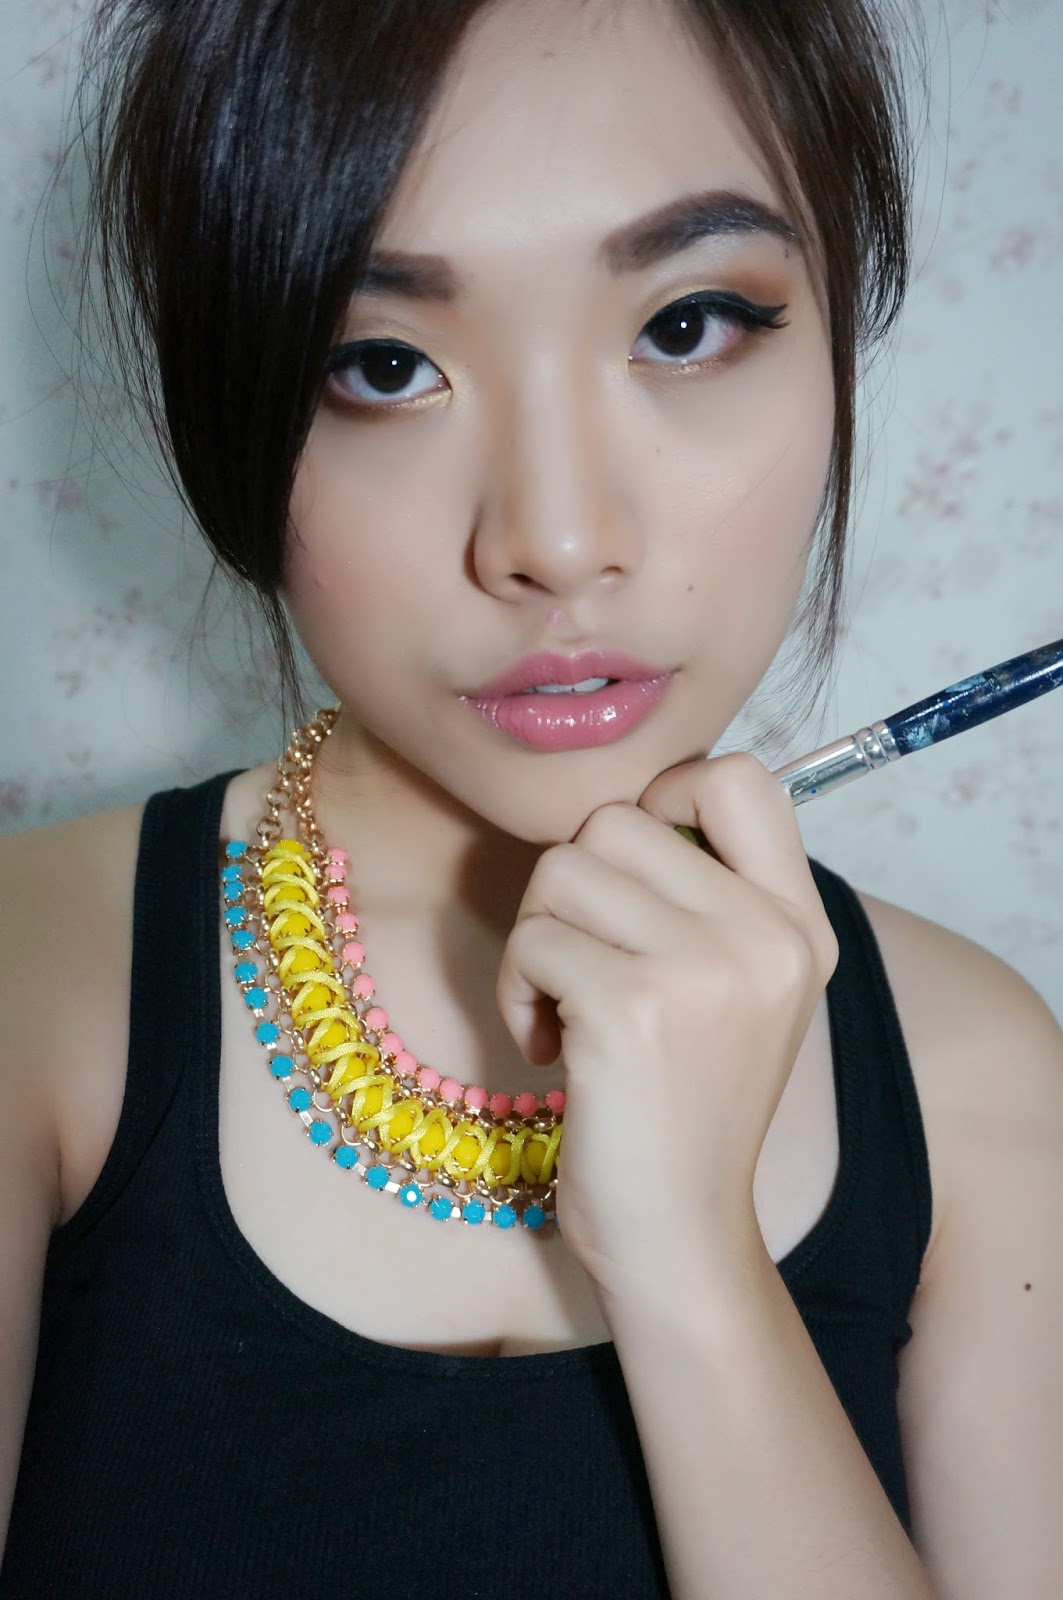 REVIEW BeautyLabo Hair Dye Raspberry Pink Korean Makeup